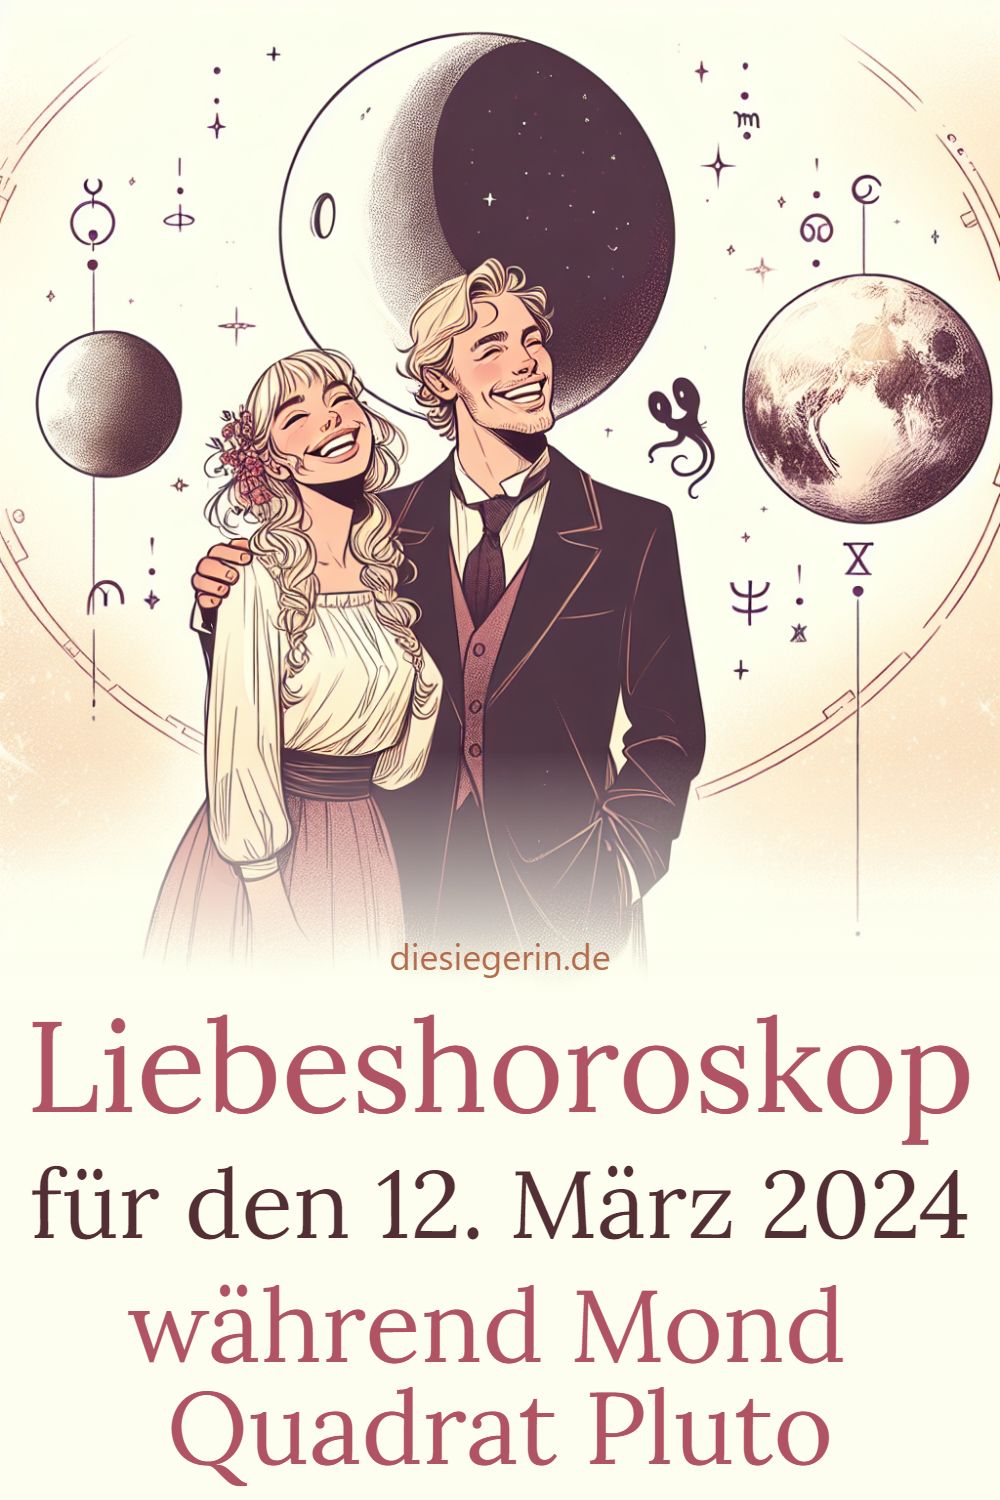 Liebeshoroskop für den 12. März 2024 während Mond Quadrat Pluto